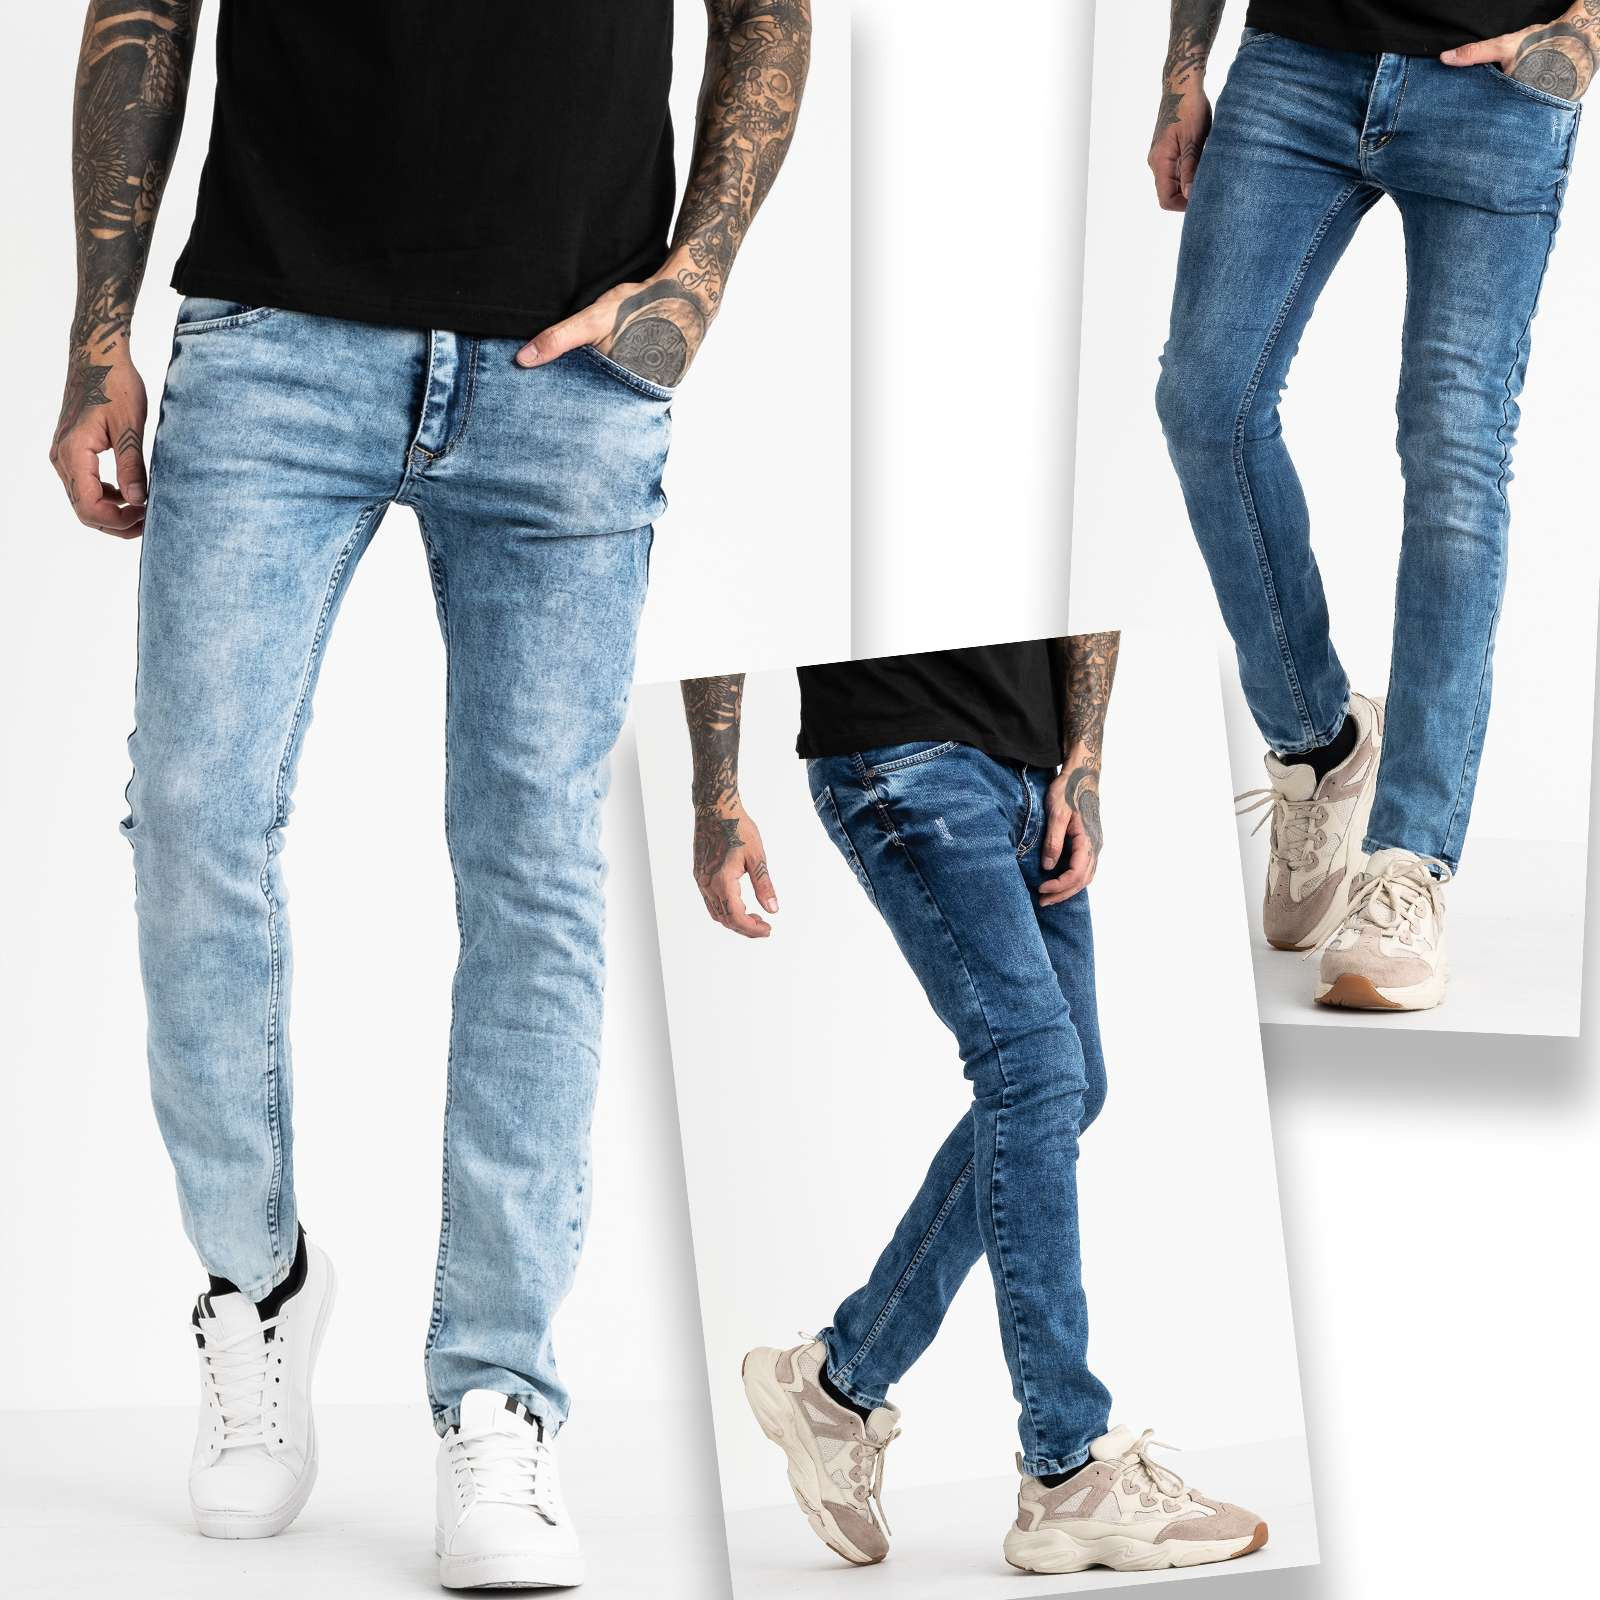 6743 Destry джинсы мужские синие стрейчевые с царапками микс из 3-ех моделей (8 ед. размеры: 29.29.29.32.32.32.32.32)